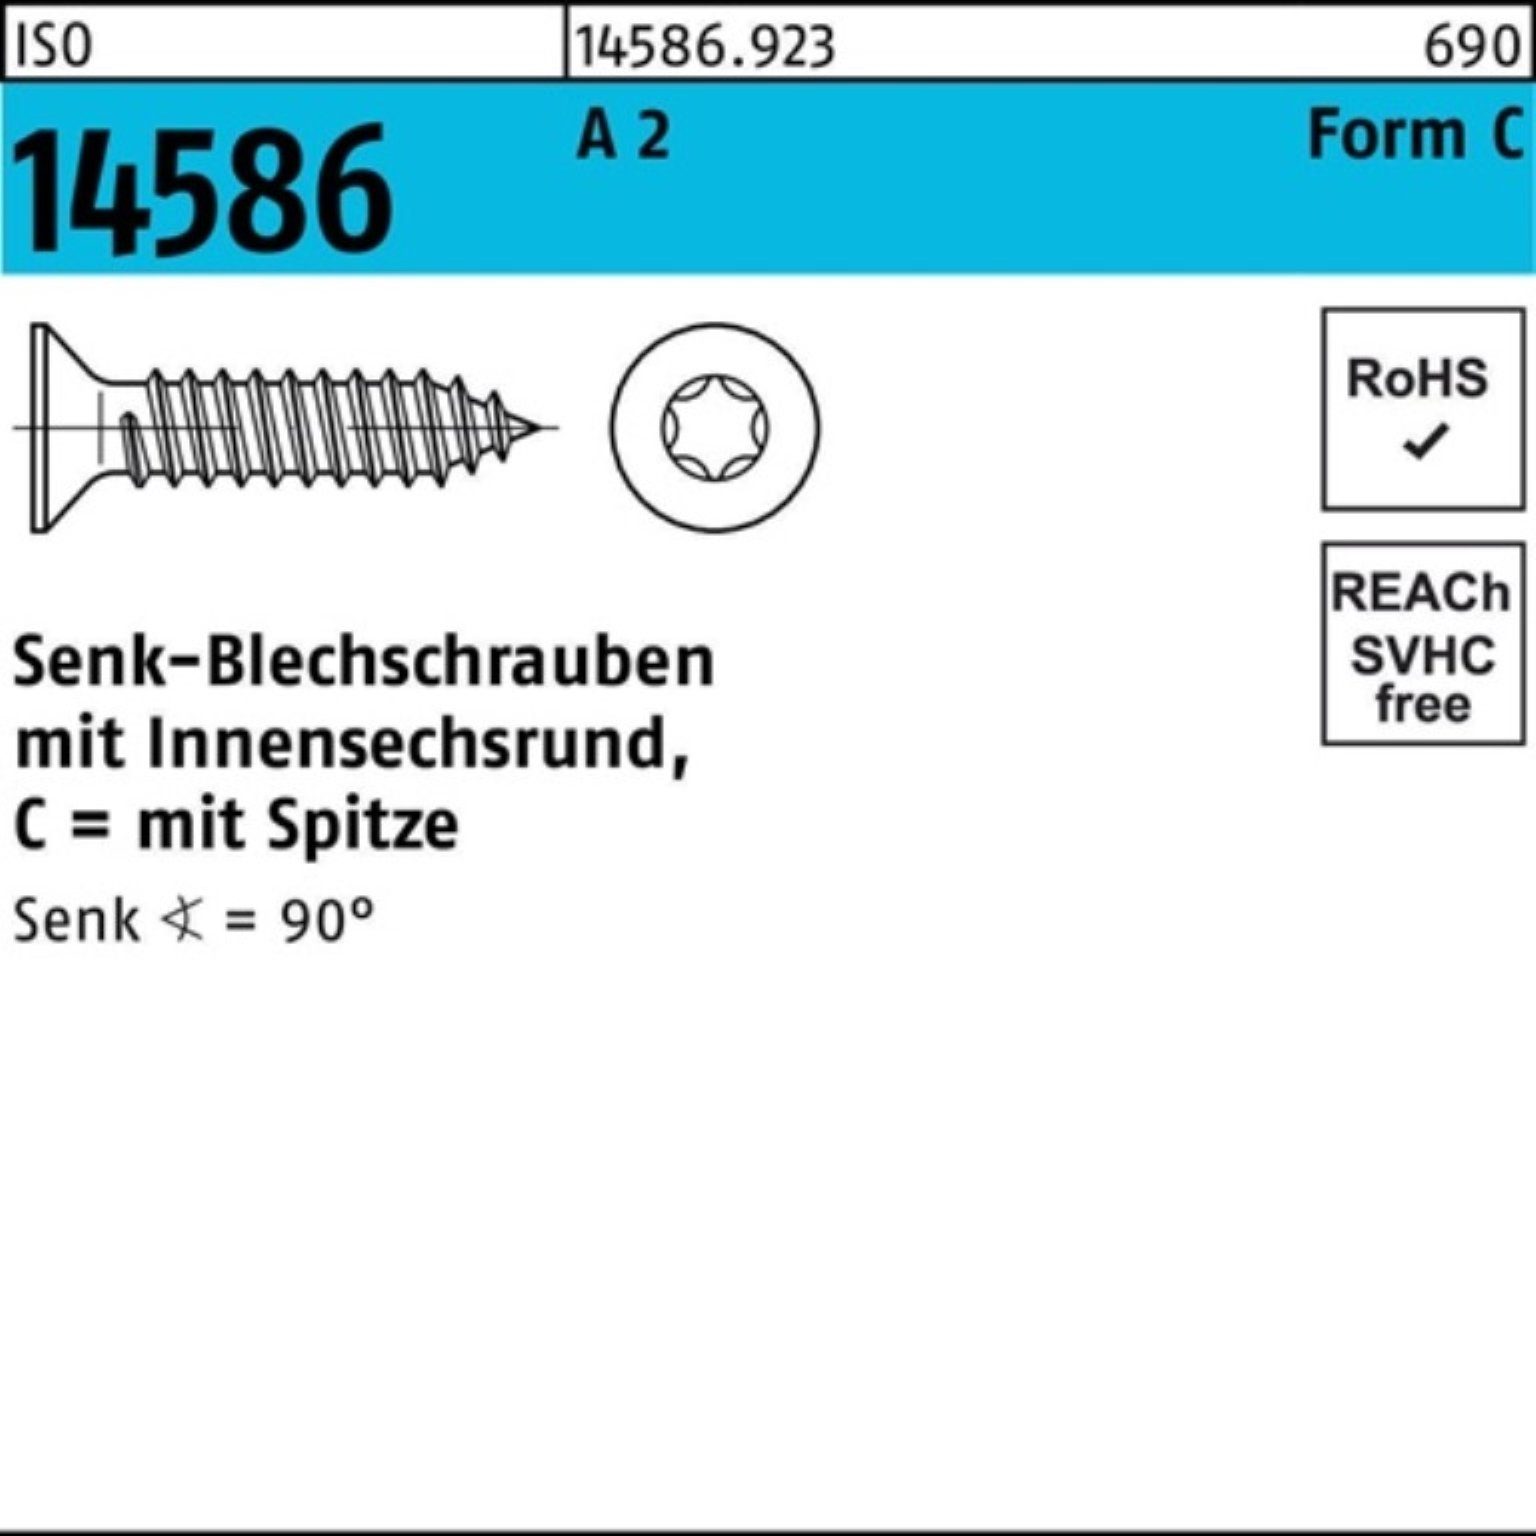 ISO 2 -C 9,5 Pack Schraube A T25 Senkblechschraube Reyher 500er ISR/Spitze 14586 4,8x